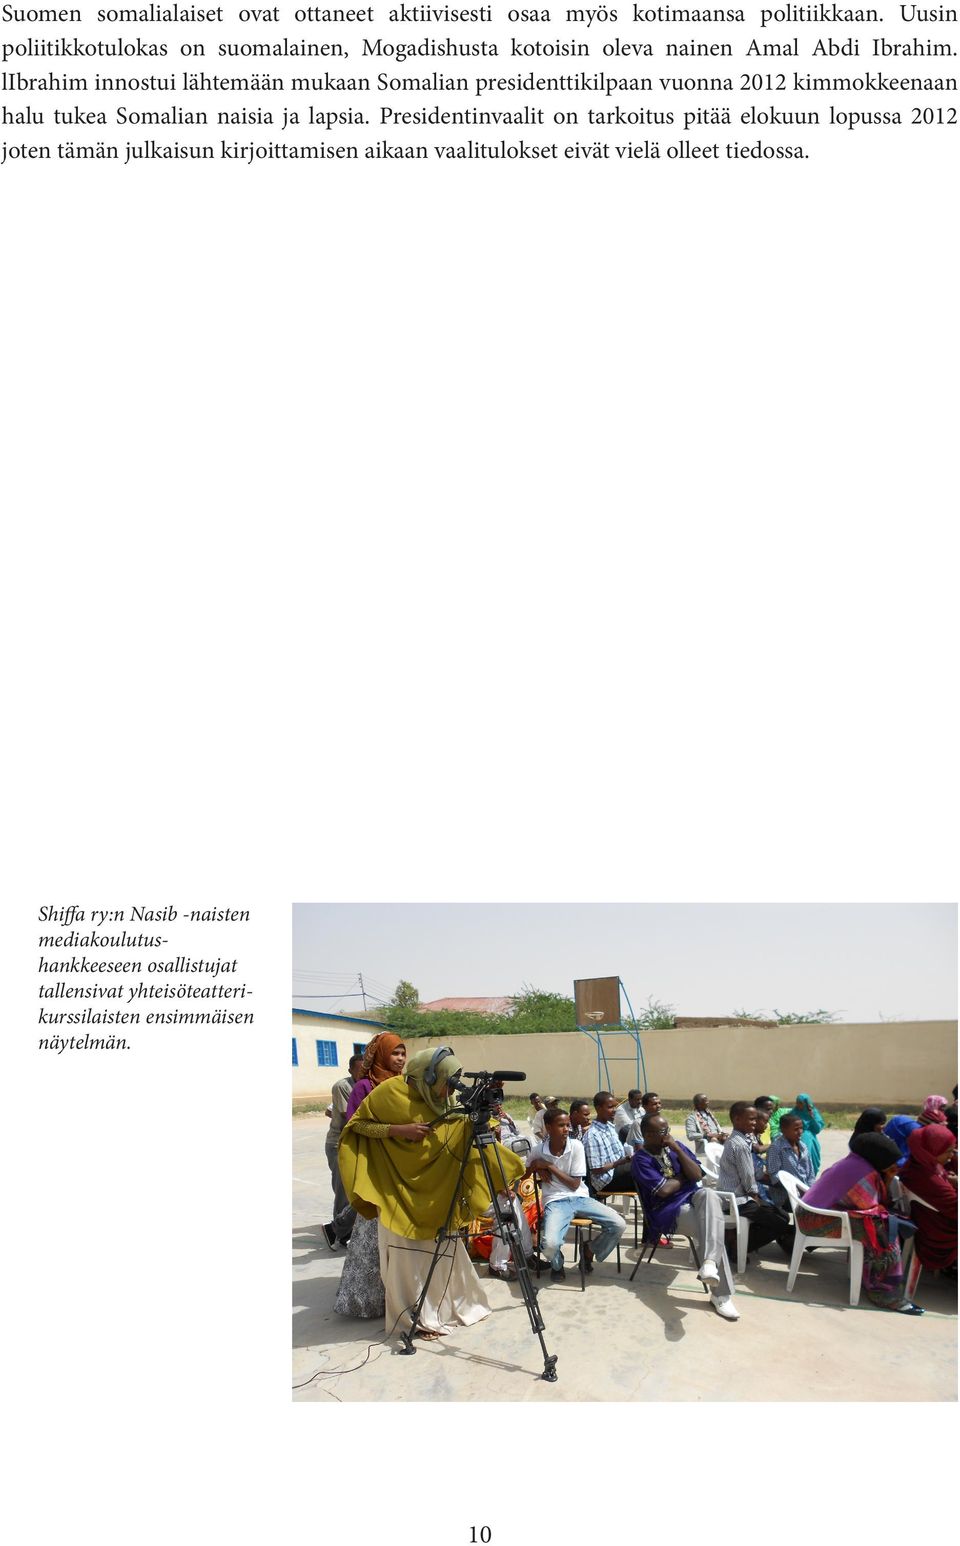 librahim innostui lähtemään mukaan Somalian presidenttikilpaan vuonna 2012 kimmokkeenaan halu tukea Somalian naisia ja lapsia.